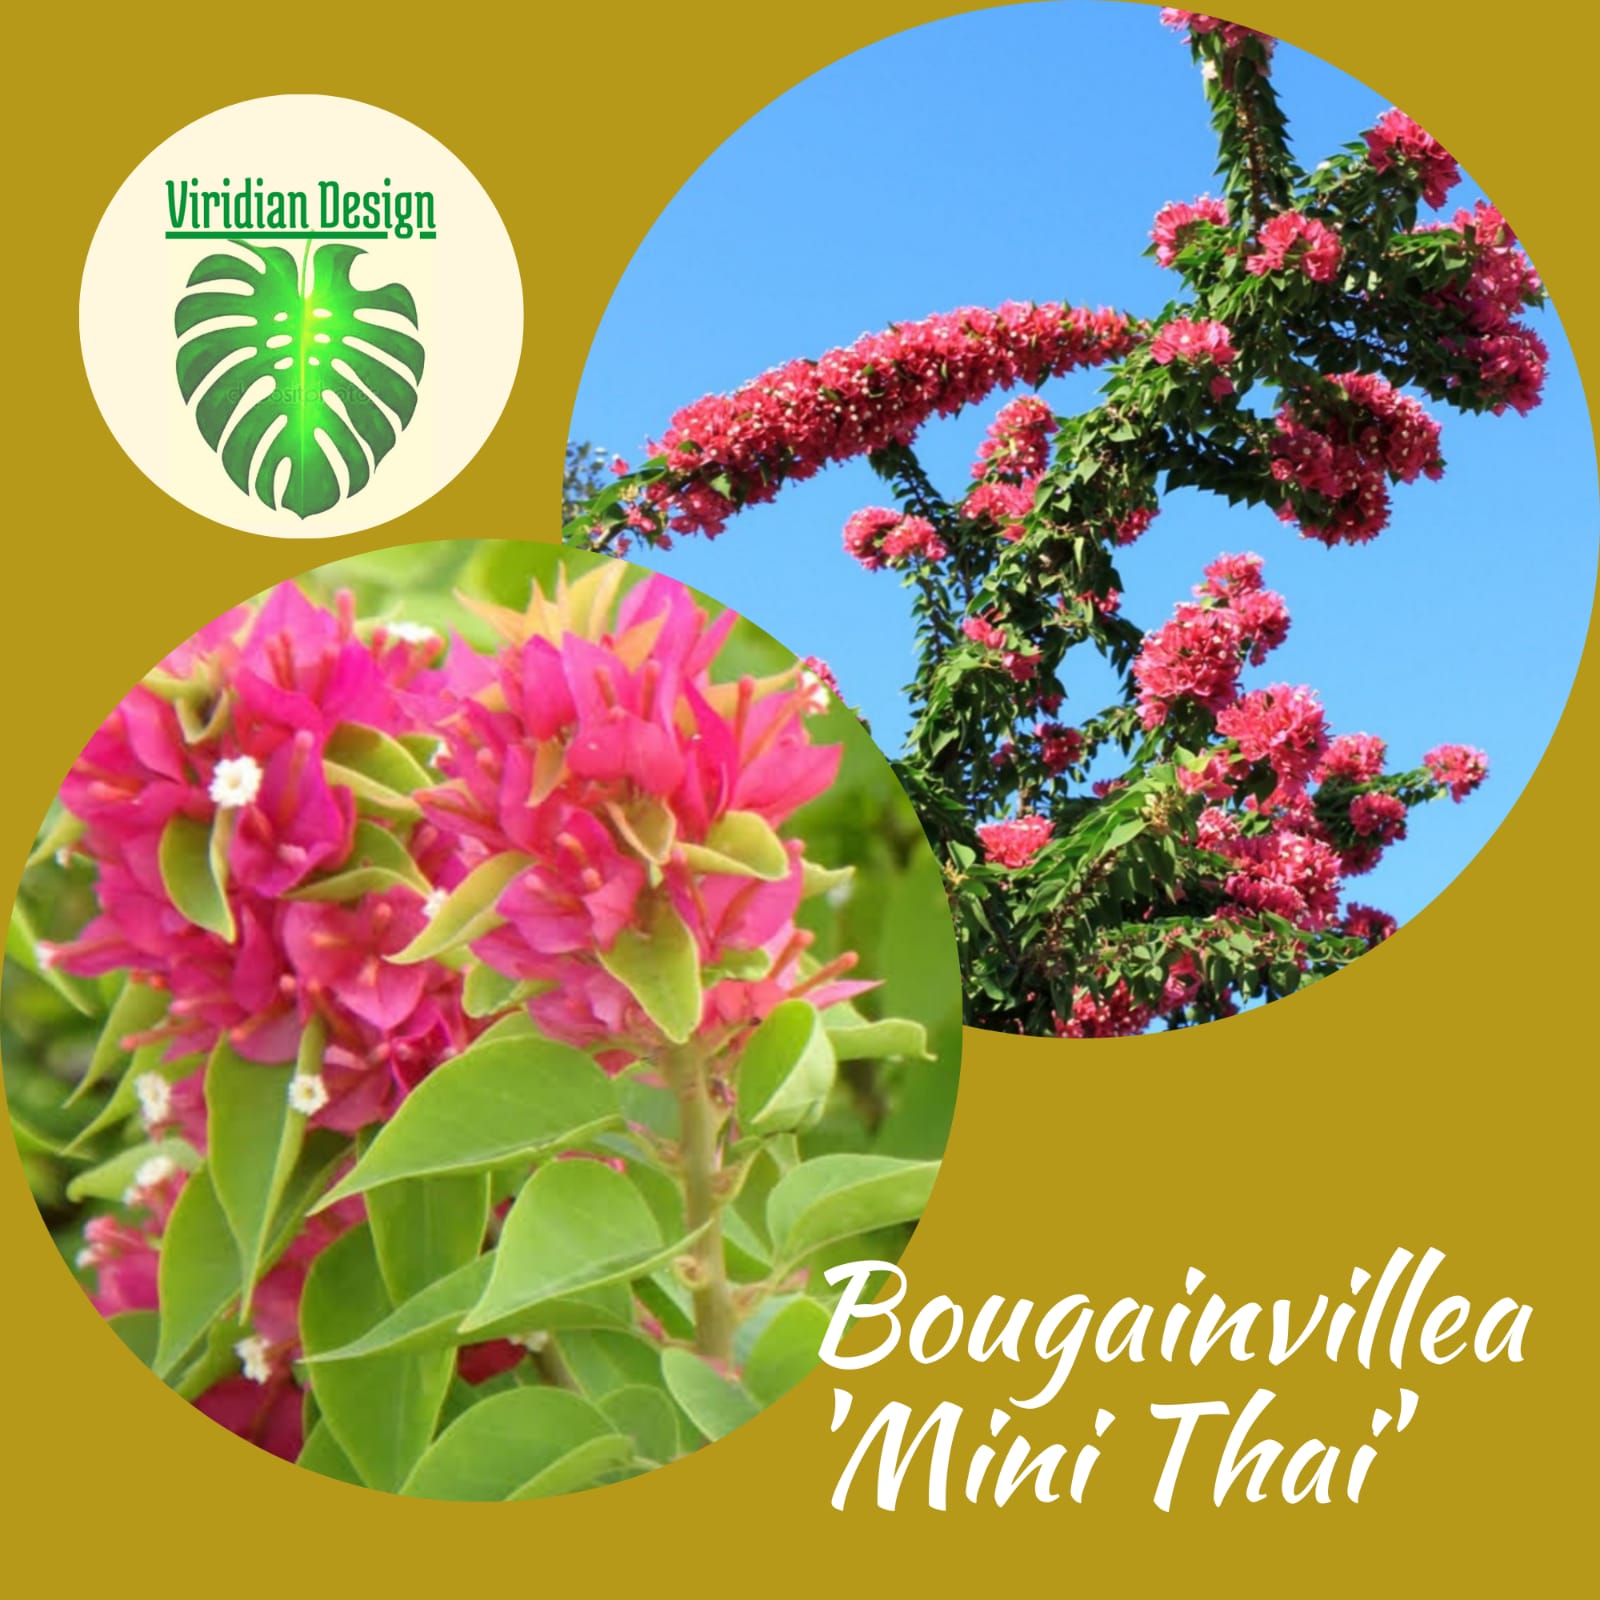 Bougainvillea 'Mini Thai' en canasta en casa